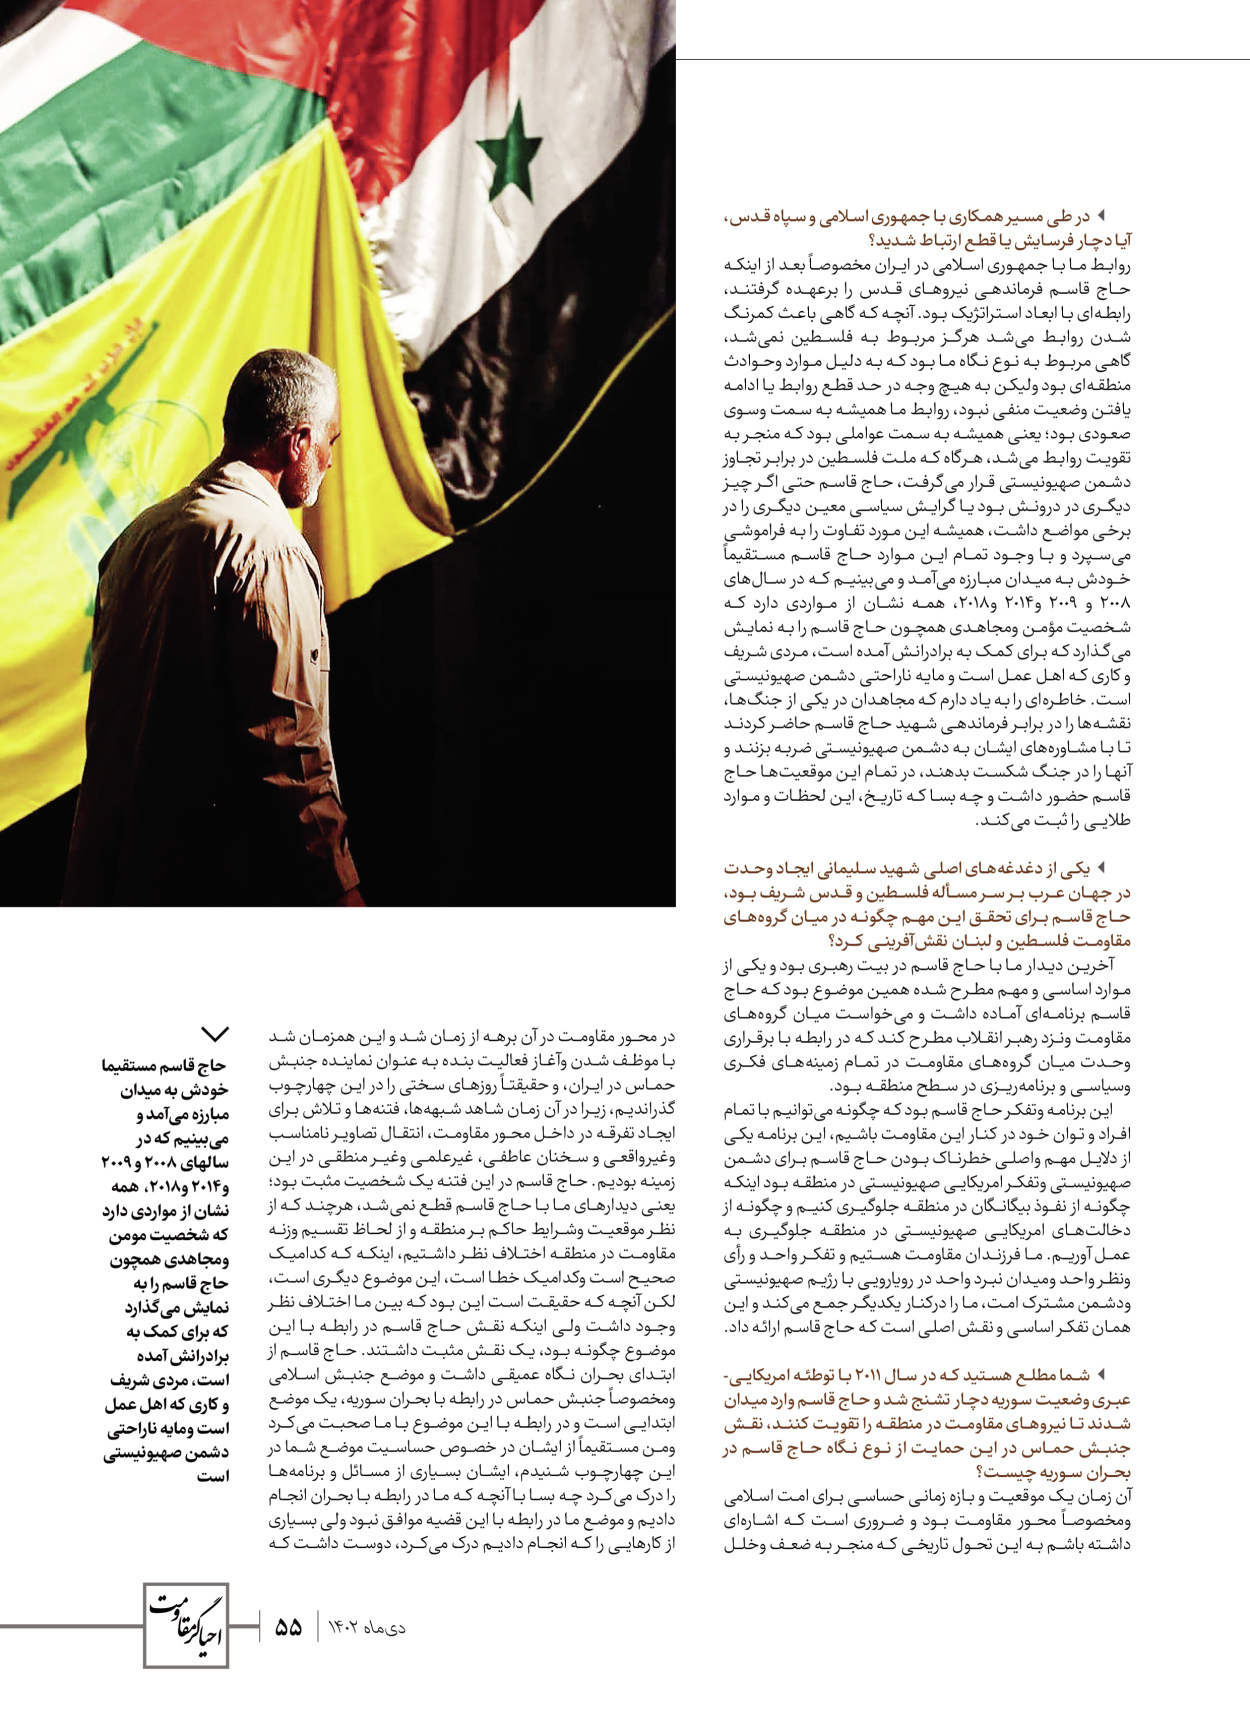 روزنامه ایران - ویژه نامه ویژ ه نامه چهارمین سالگرد شهادت سردار سلیمانی - ۱۳ دی ۱۴۰۲ - صفحه ۵۵